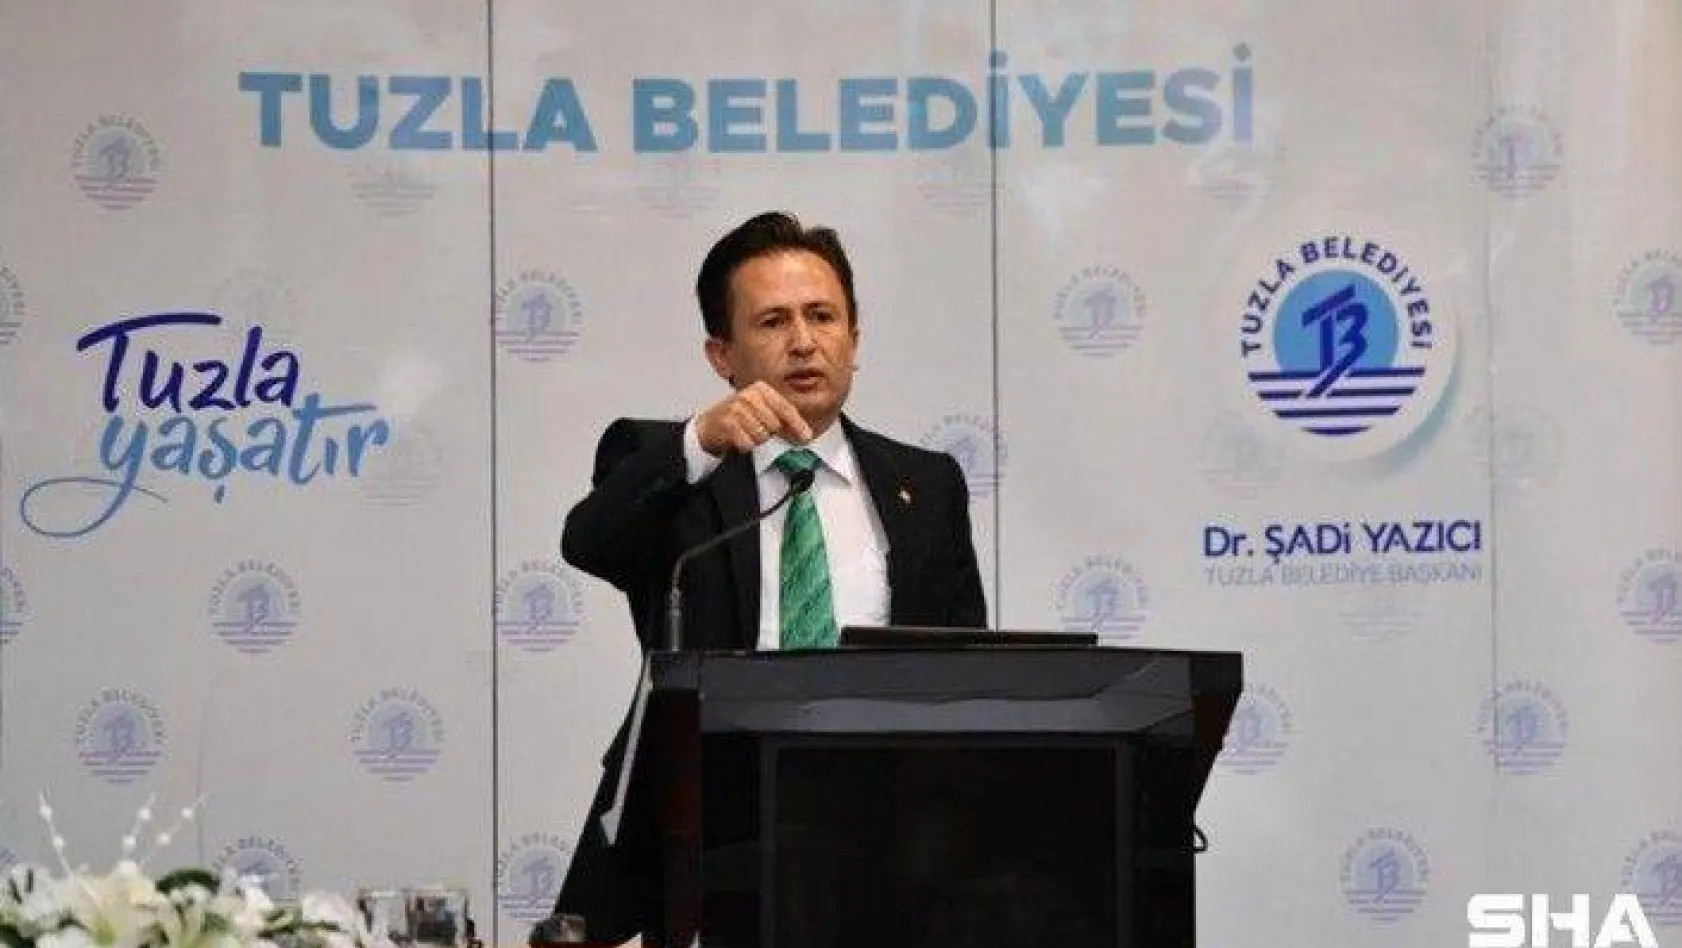 Tuzla Belediye Başkanı Dr. Şadi Yazıcı: 'Tüm vatandaşlarımızın yanında ve hizmetinde olacağız'